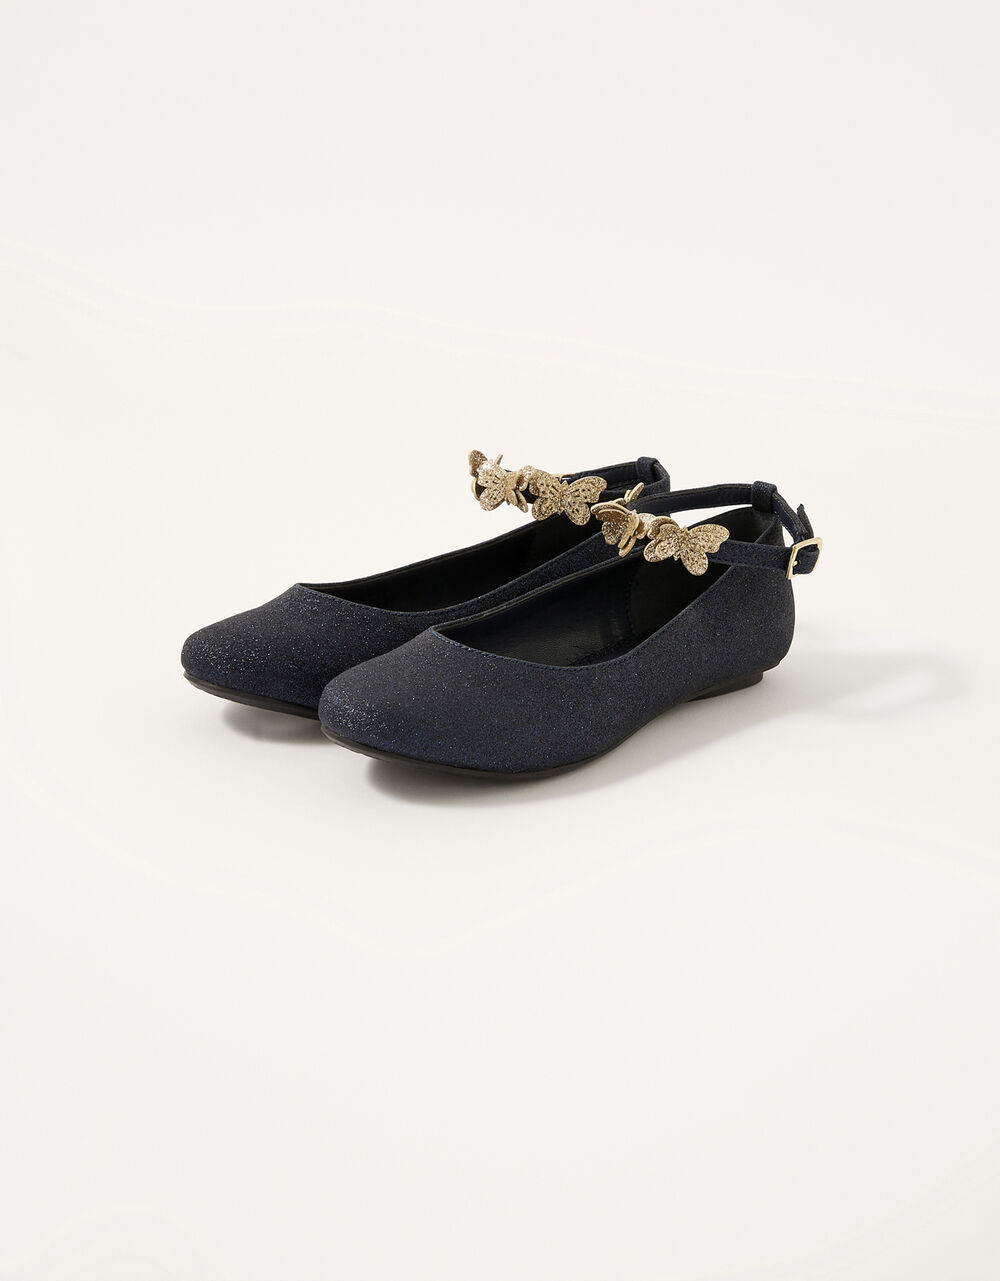 Children Children's Shoes & Sandals | Leorah Glitter Butterfly Ballerina Flats Blue - FI58707